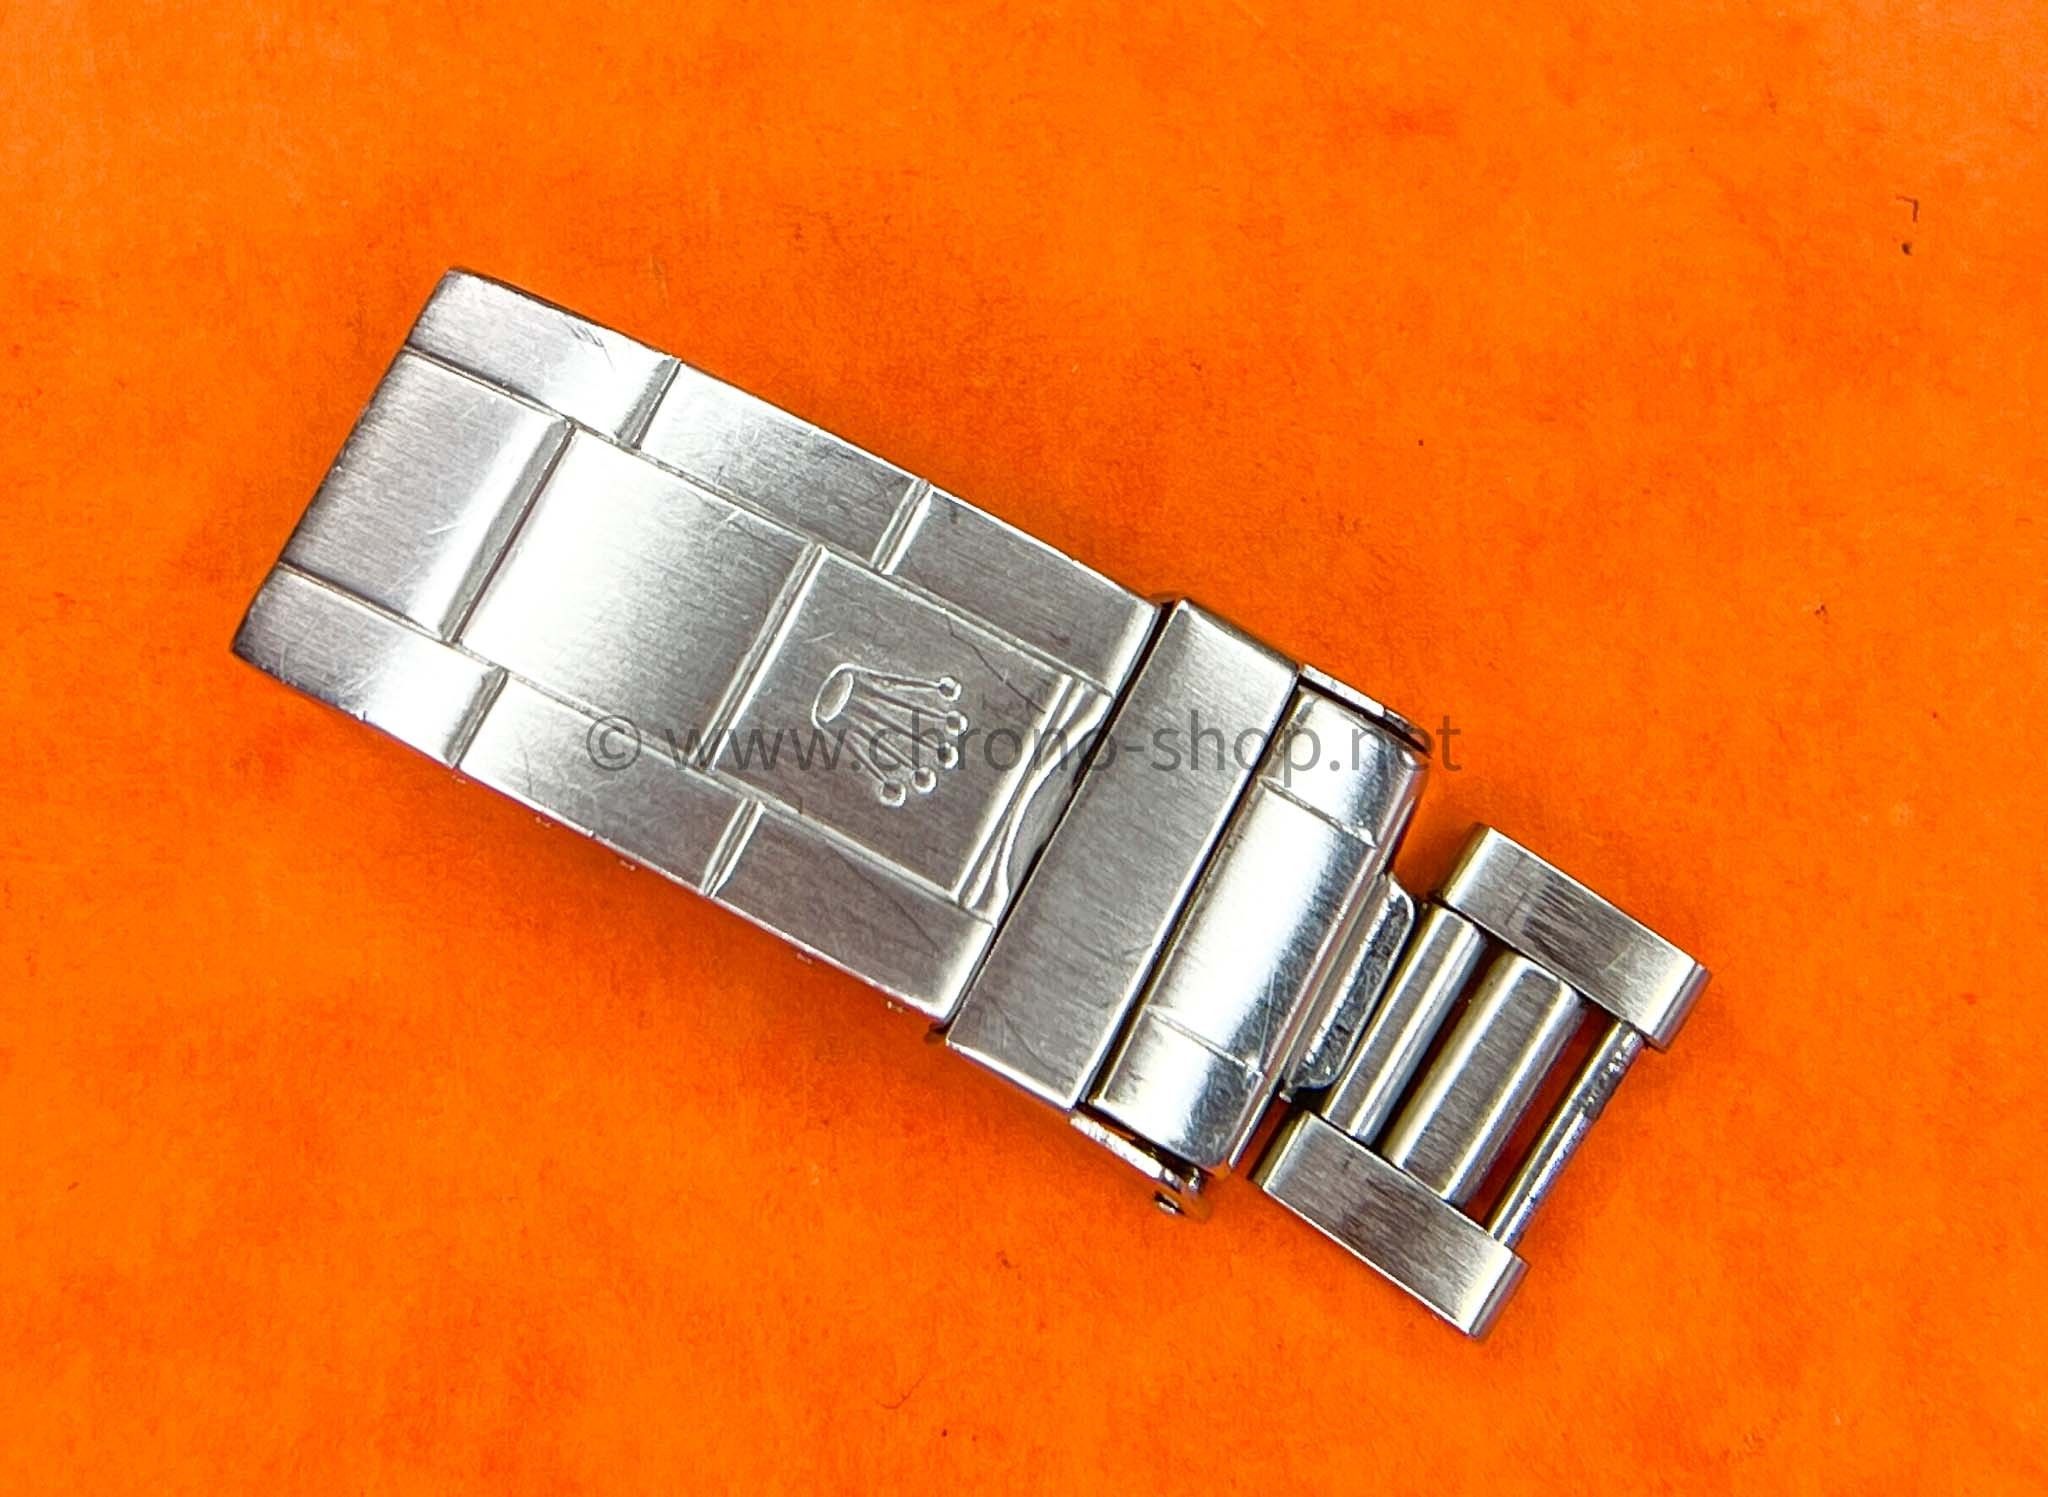 WITHDRAWN] - Perfect Italian 93150 Bracelet - No Clasp! | Replica Watch Info